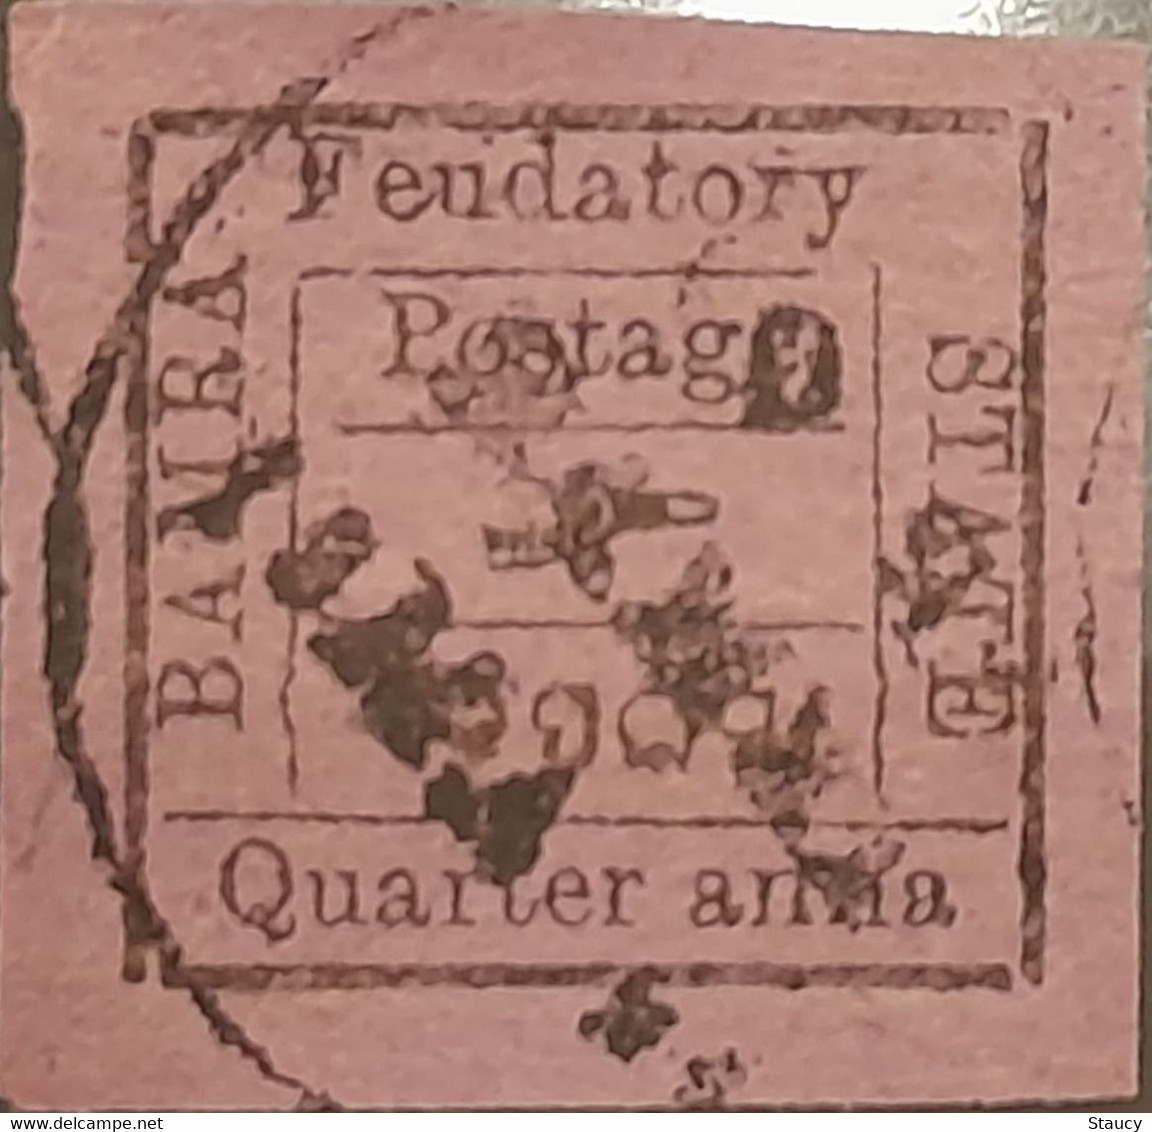 India Feudatory State BAMRA 1890 - 1893 Error 1/4a Quarter Anna Black On Reddish Purple Error "LOGO Inverted" Used - Bamra